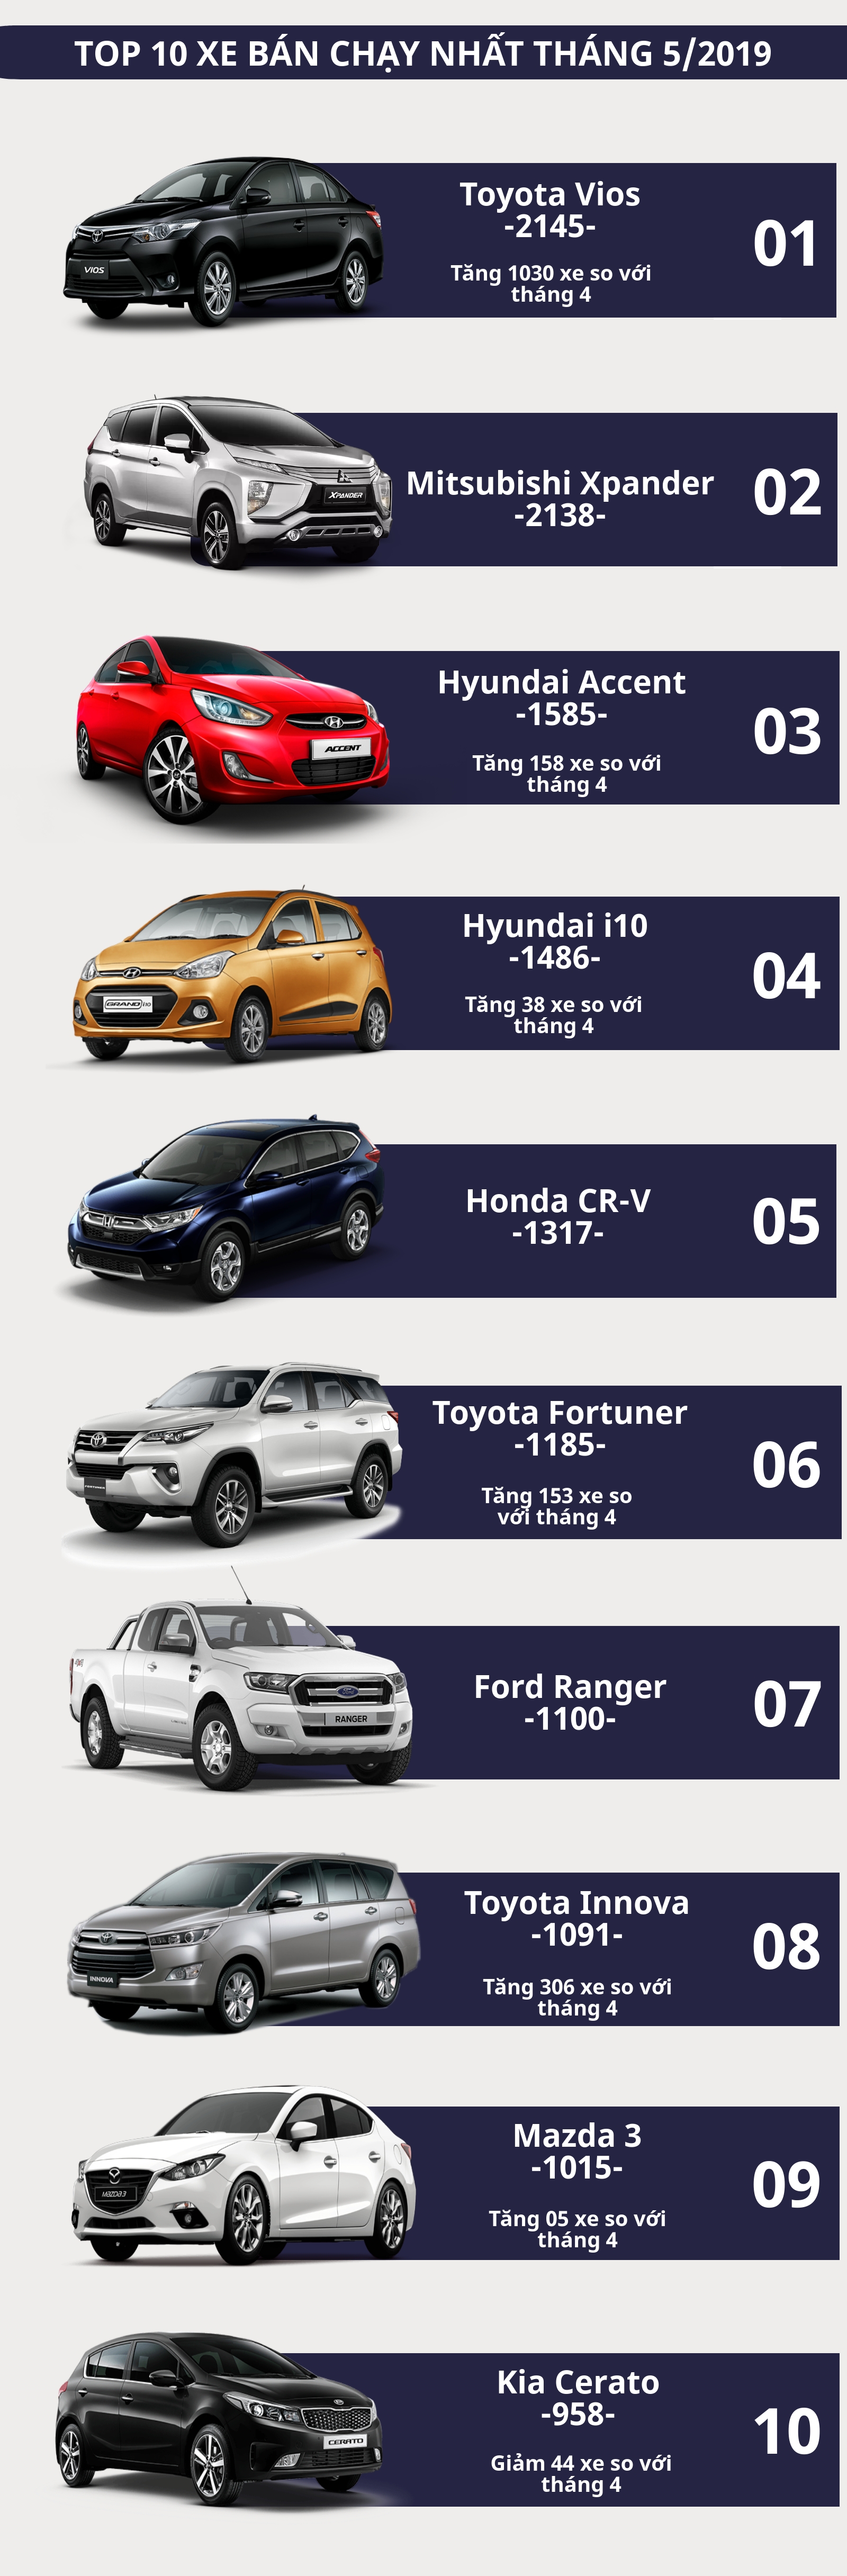 [Infographic] Top 10 xe bán chạy nhất tháng 5/2019